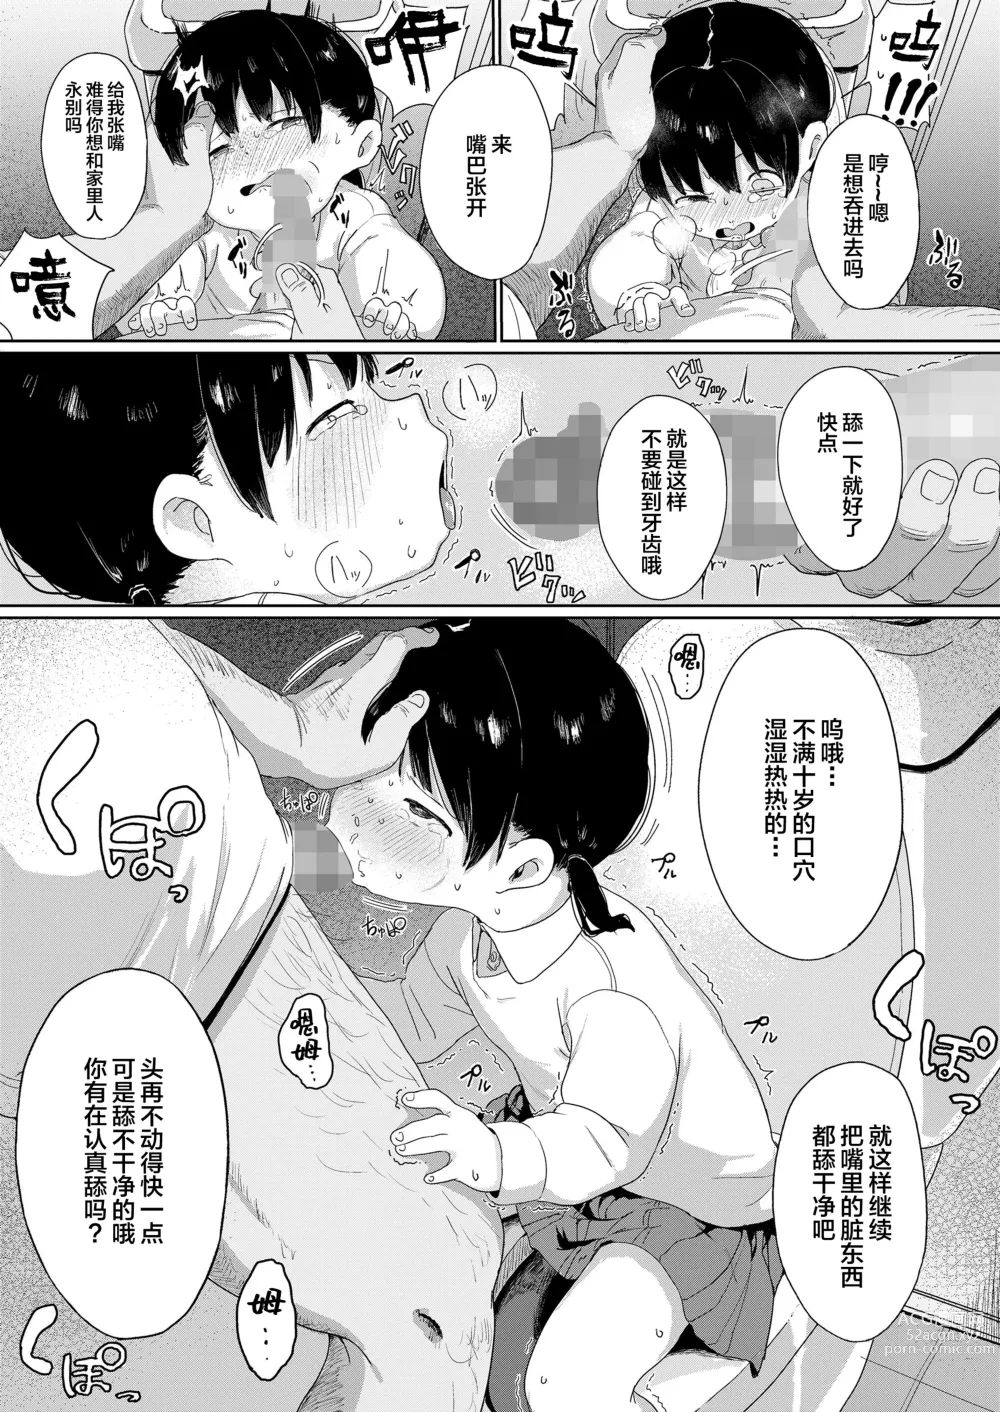 Page 6 of manga Yuka-chan